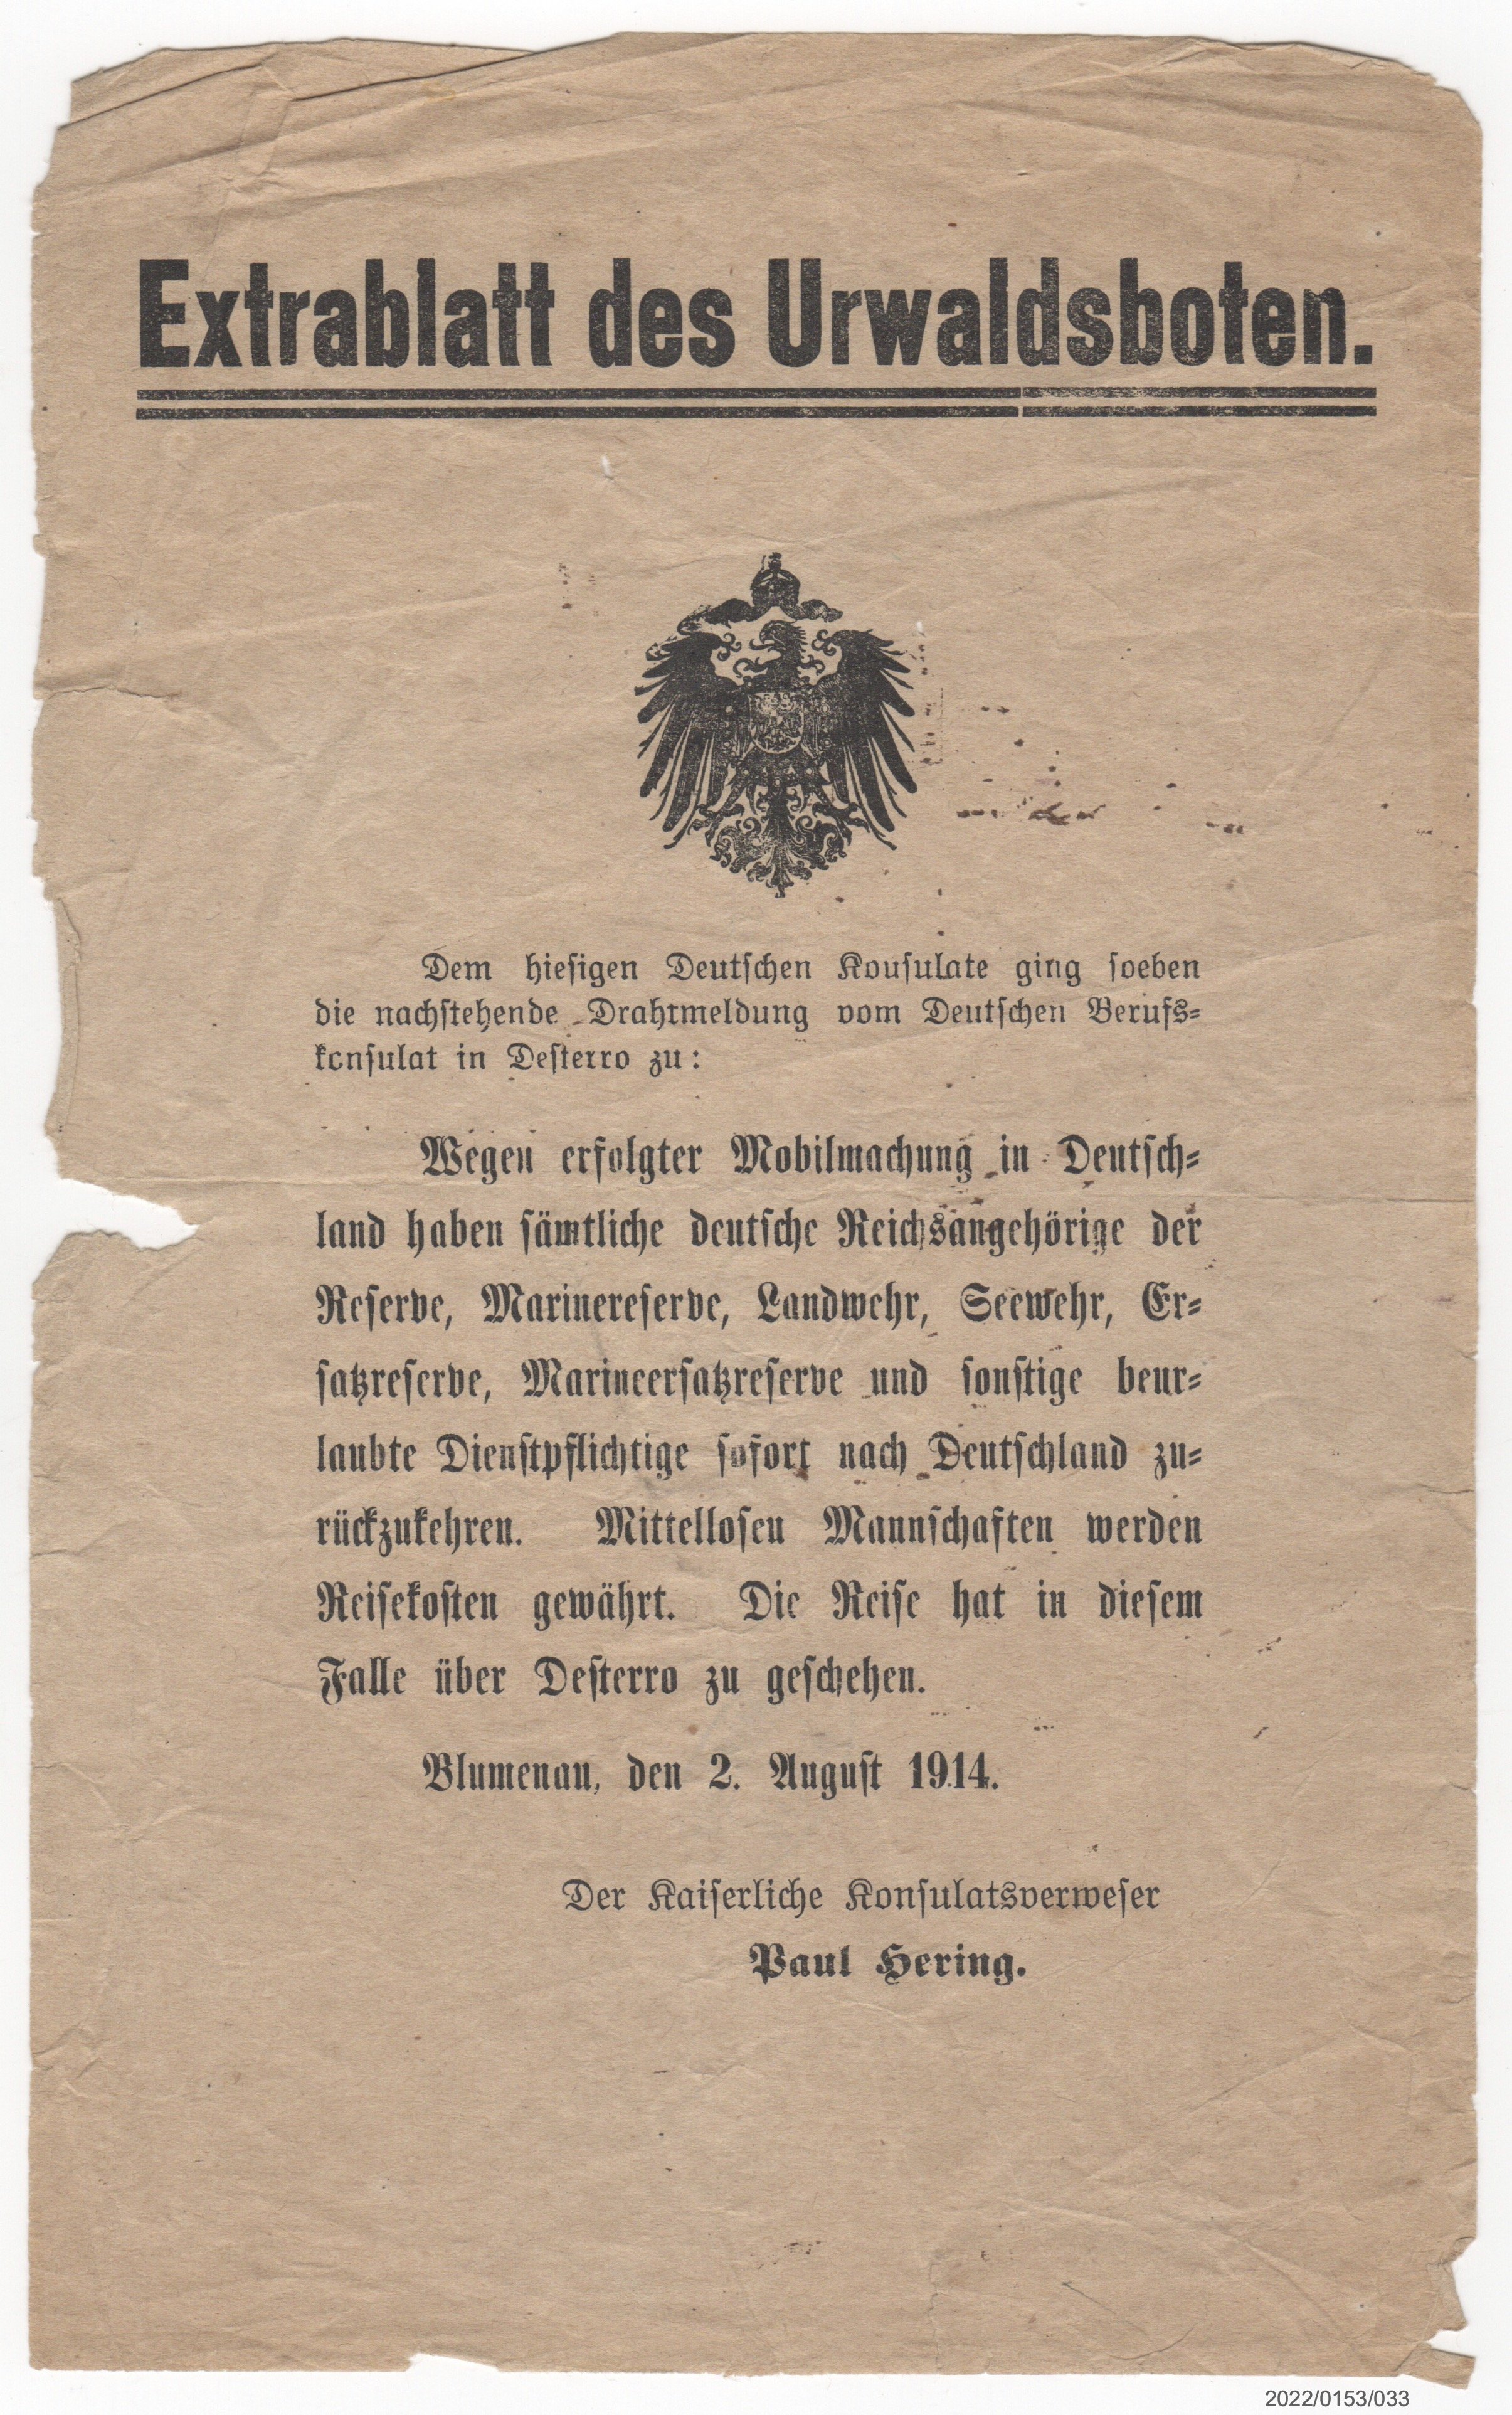 Extrablatt des Urwaldsboten 2.08.1914 (Museumsgesellschaft Bad Dürkheim e. V. CC BY-NC-SA)